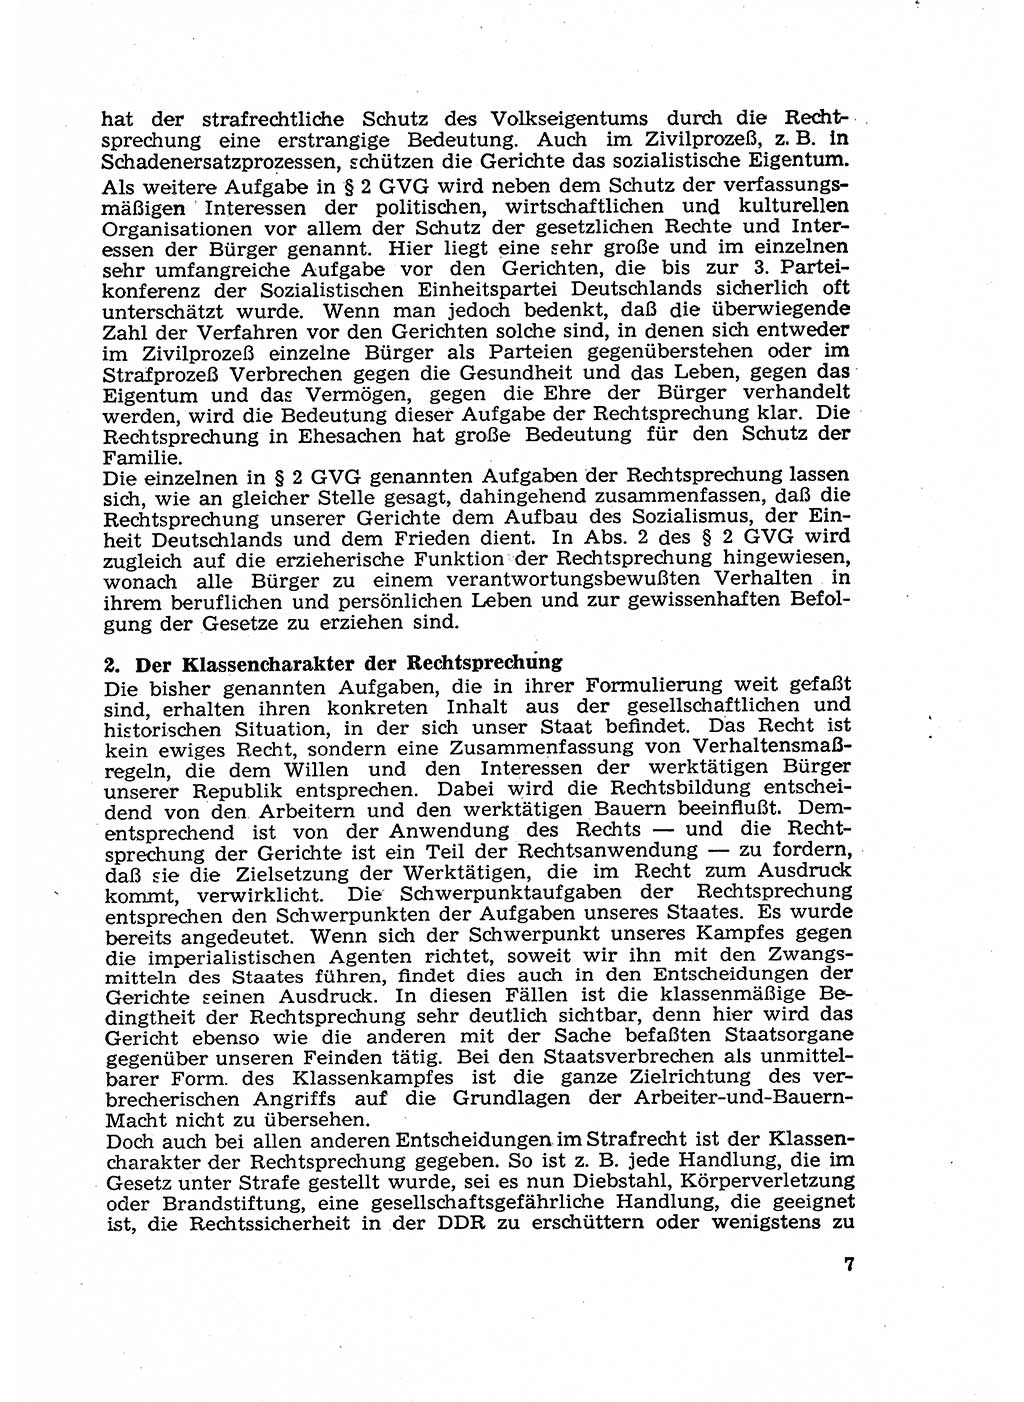 Gericht und Rechtsprechung in der Deutschen Demokratischen Republik (DDR) 1956, Seite 7 (Ger. Rechtspr. DDR 1956, S. 7)